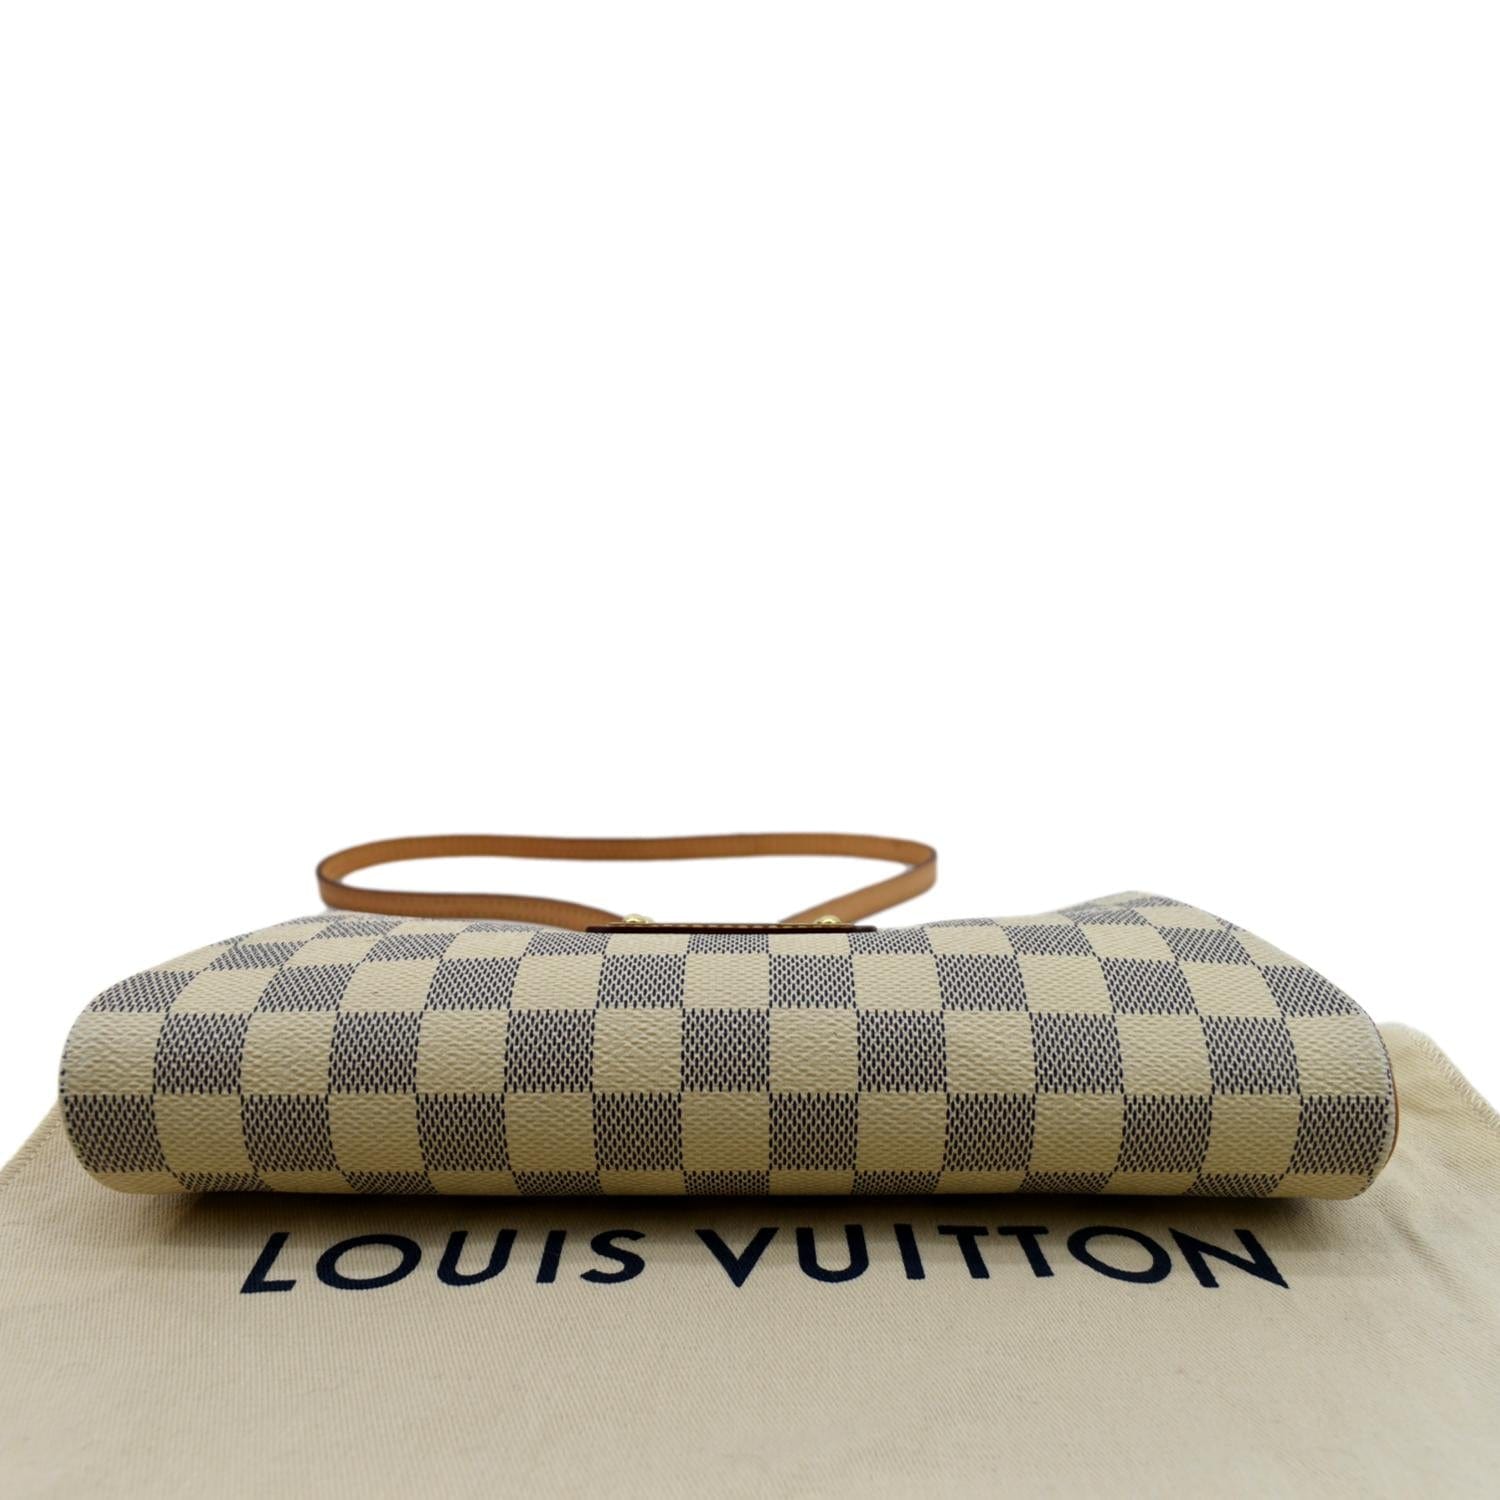 SOLD‼️Louis Vuitton Monogram PVC clutch